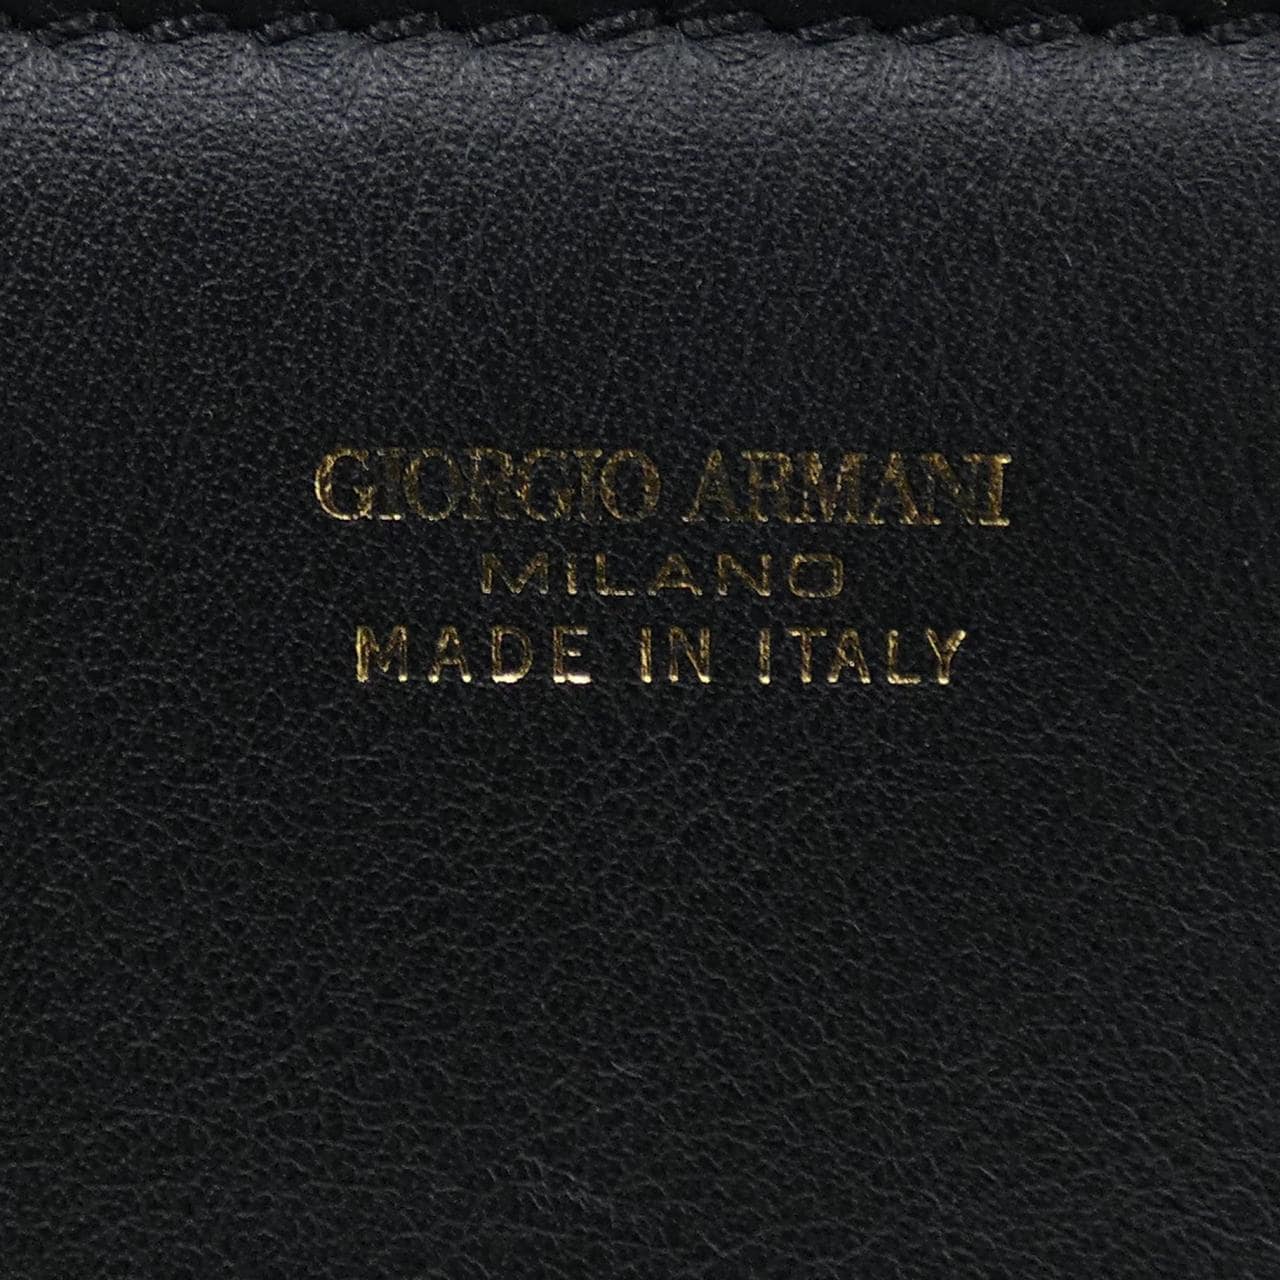 Giorgio Armani GIORGIO ARMANI BAG